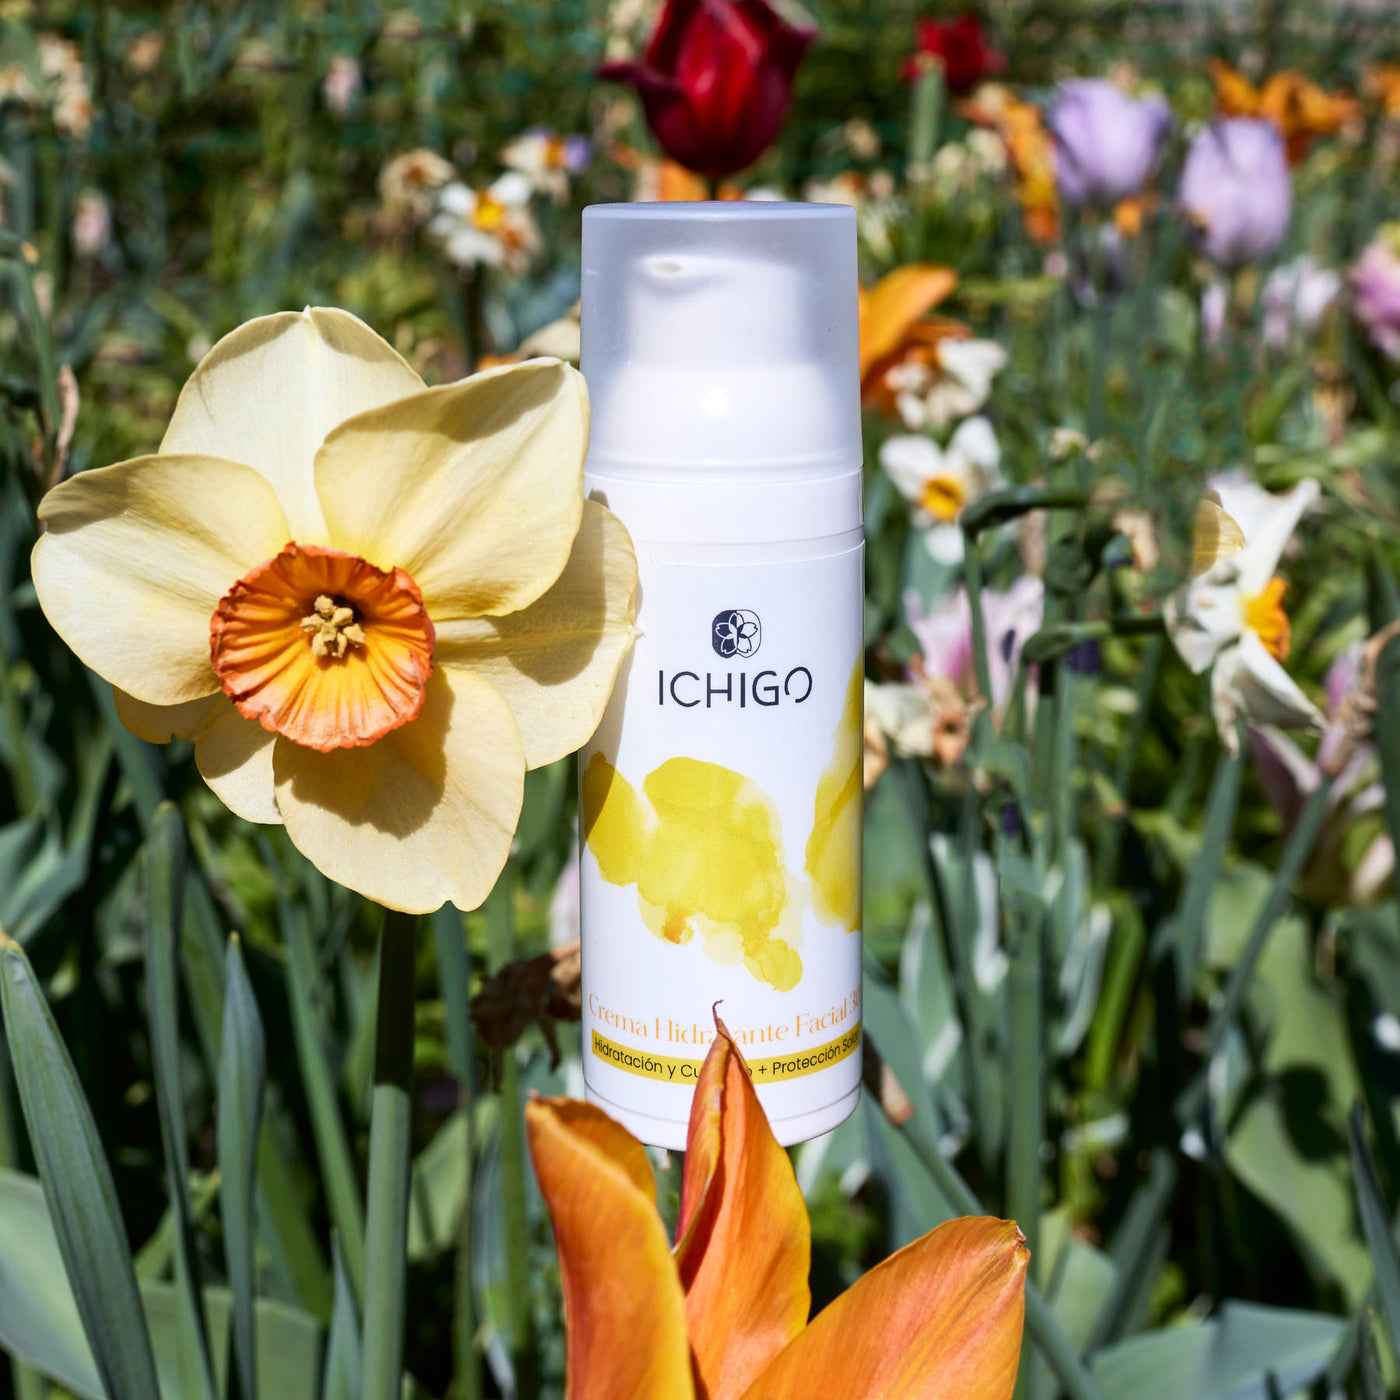 ICHIGO Facial Moisturizing Cream 30 Feuchtigkeit und Pflege + Sonnenschutz